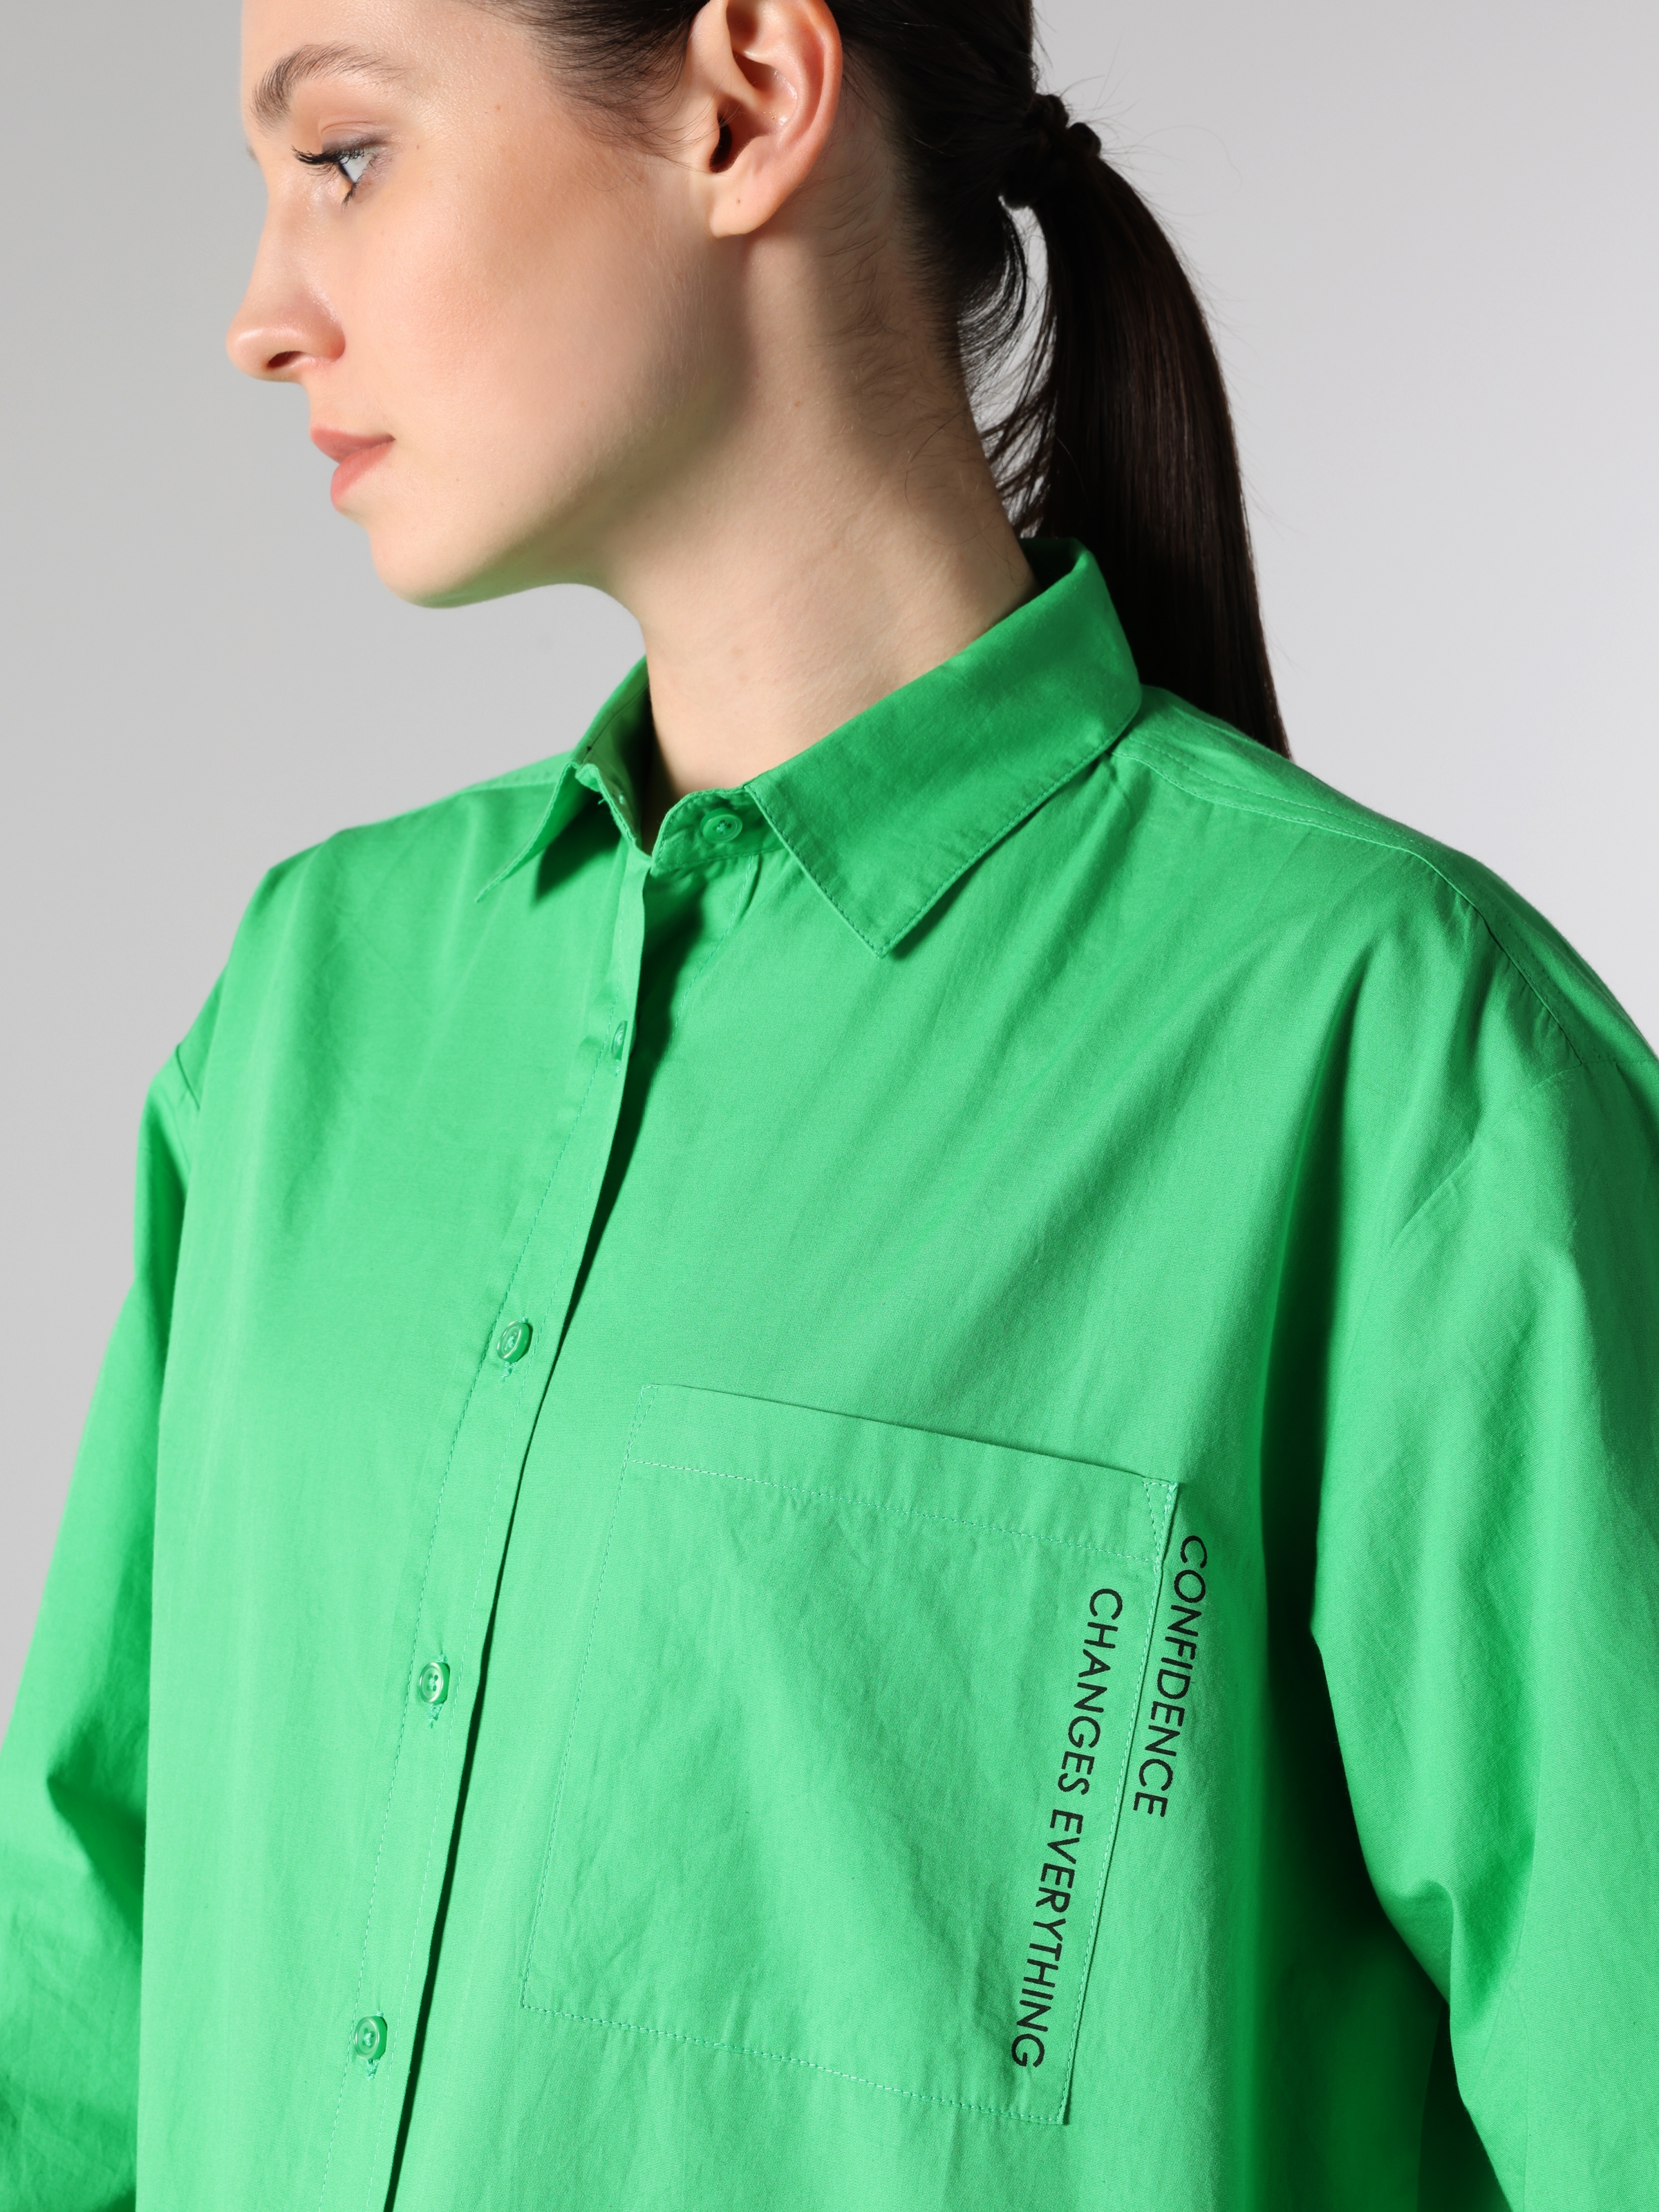 Afficher les détails de Chemise À Manches Longues Pour Femme Verte Coupe Régulière